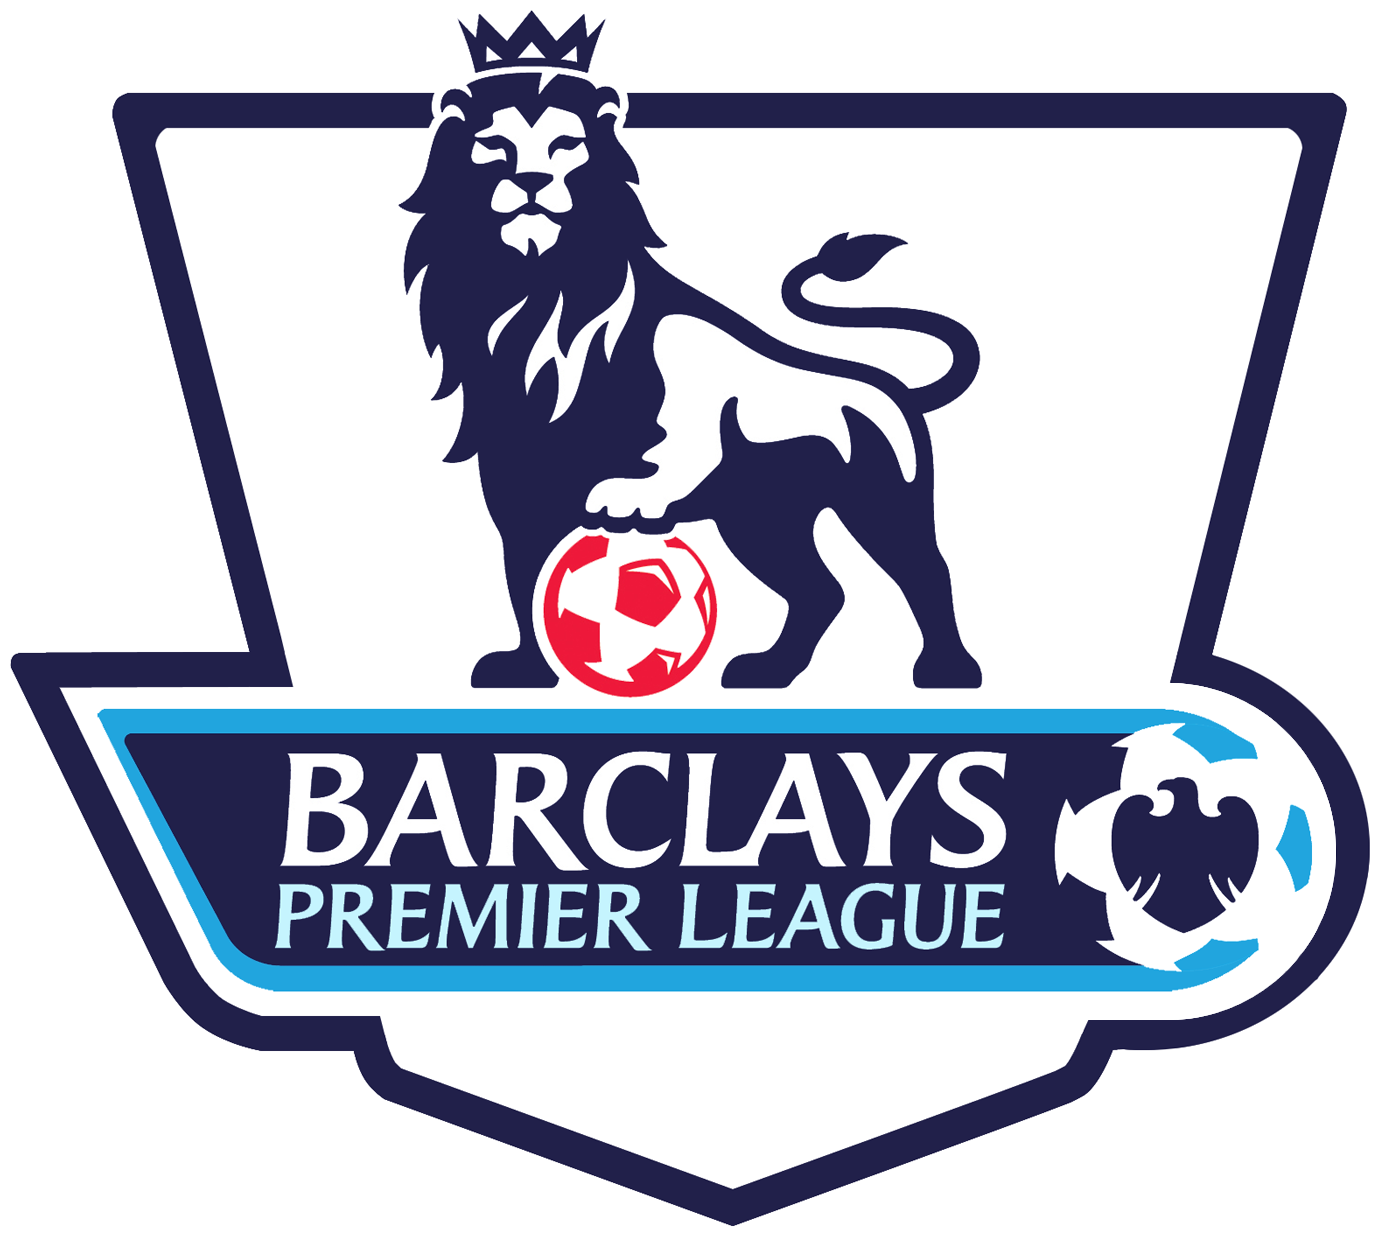 Download Barclays Premier League Logo   Premier League Logo   Full Pluspng.com  - Premier League, Transparent background PNG HD thumbnail